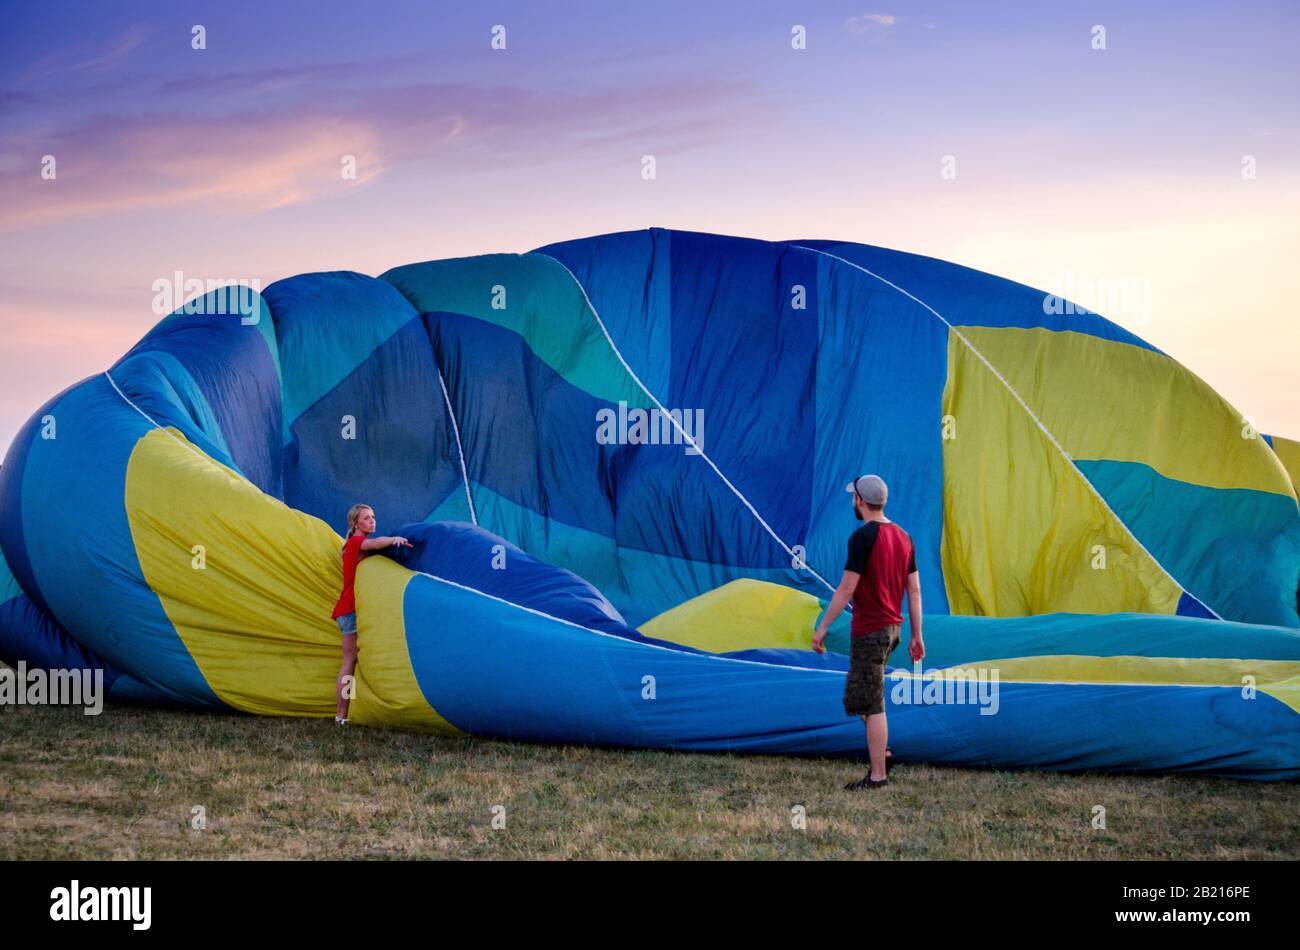 Battle Creek Michigan USA 3 luglio 2017; una coppia srotola una grande mongolfiera colorata, in uno spettacolo all'aperto Foto Stock